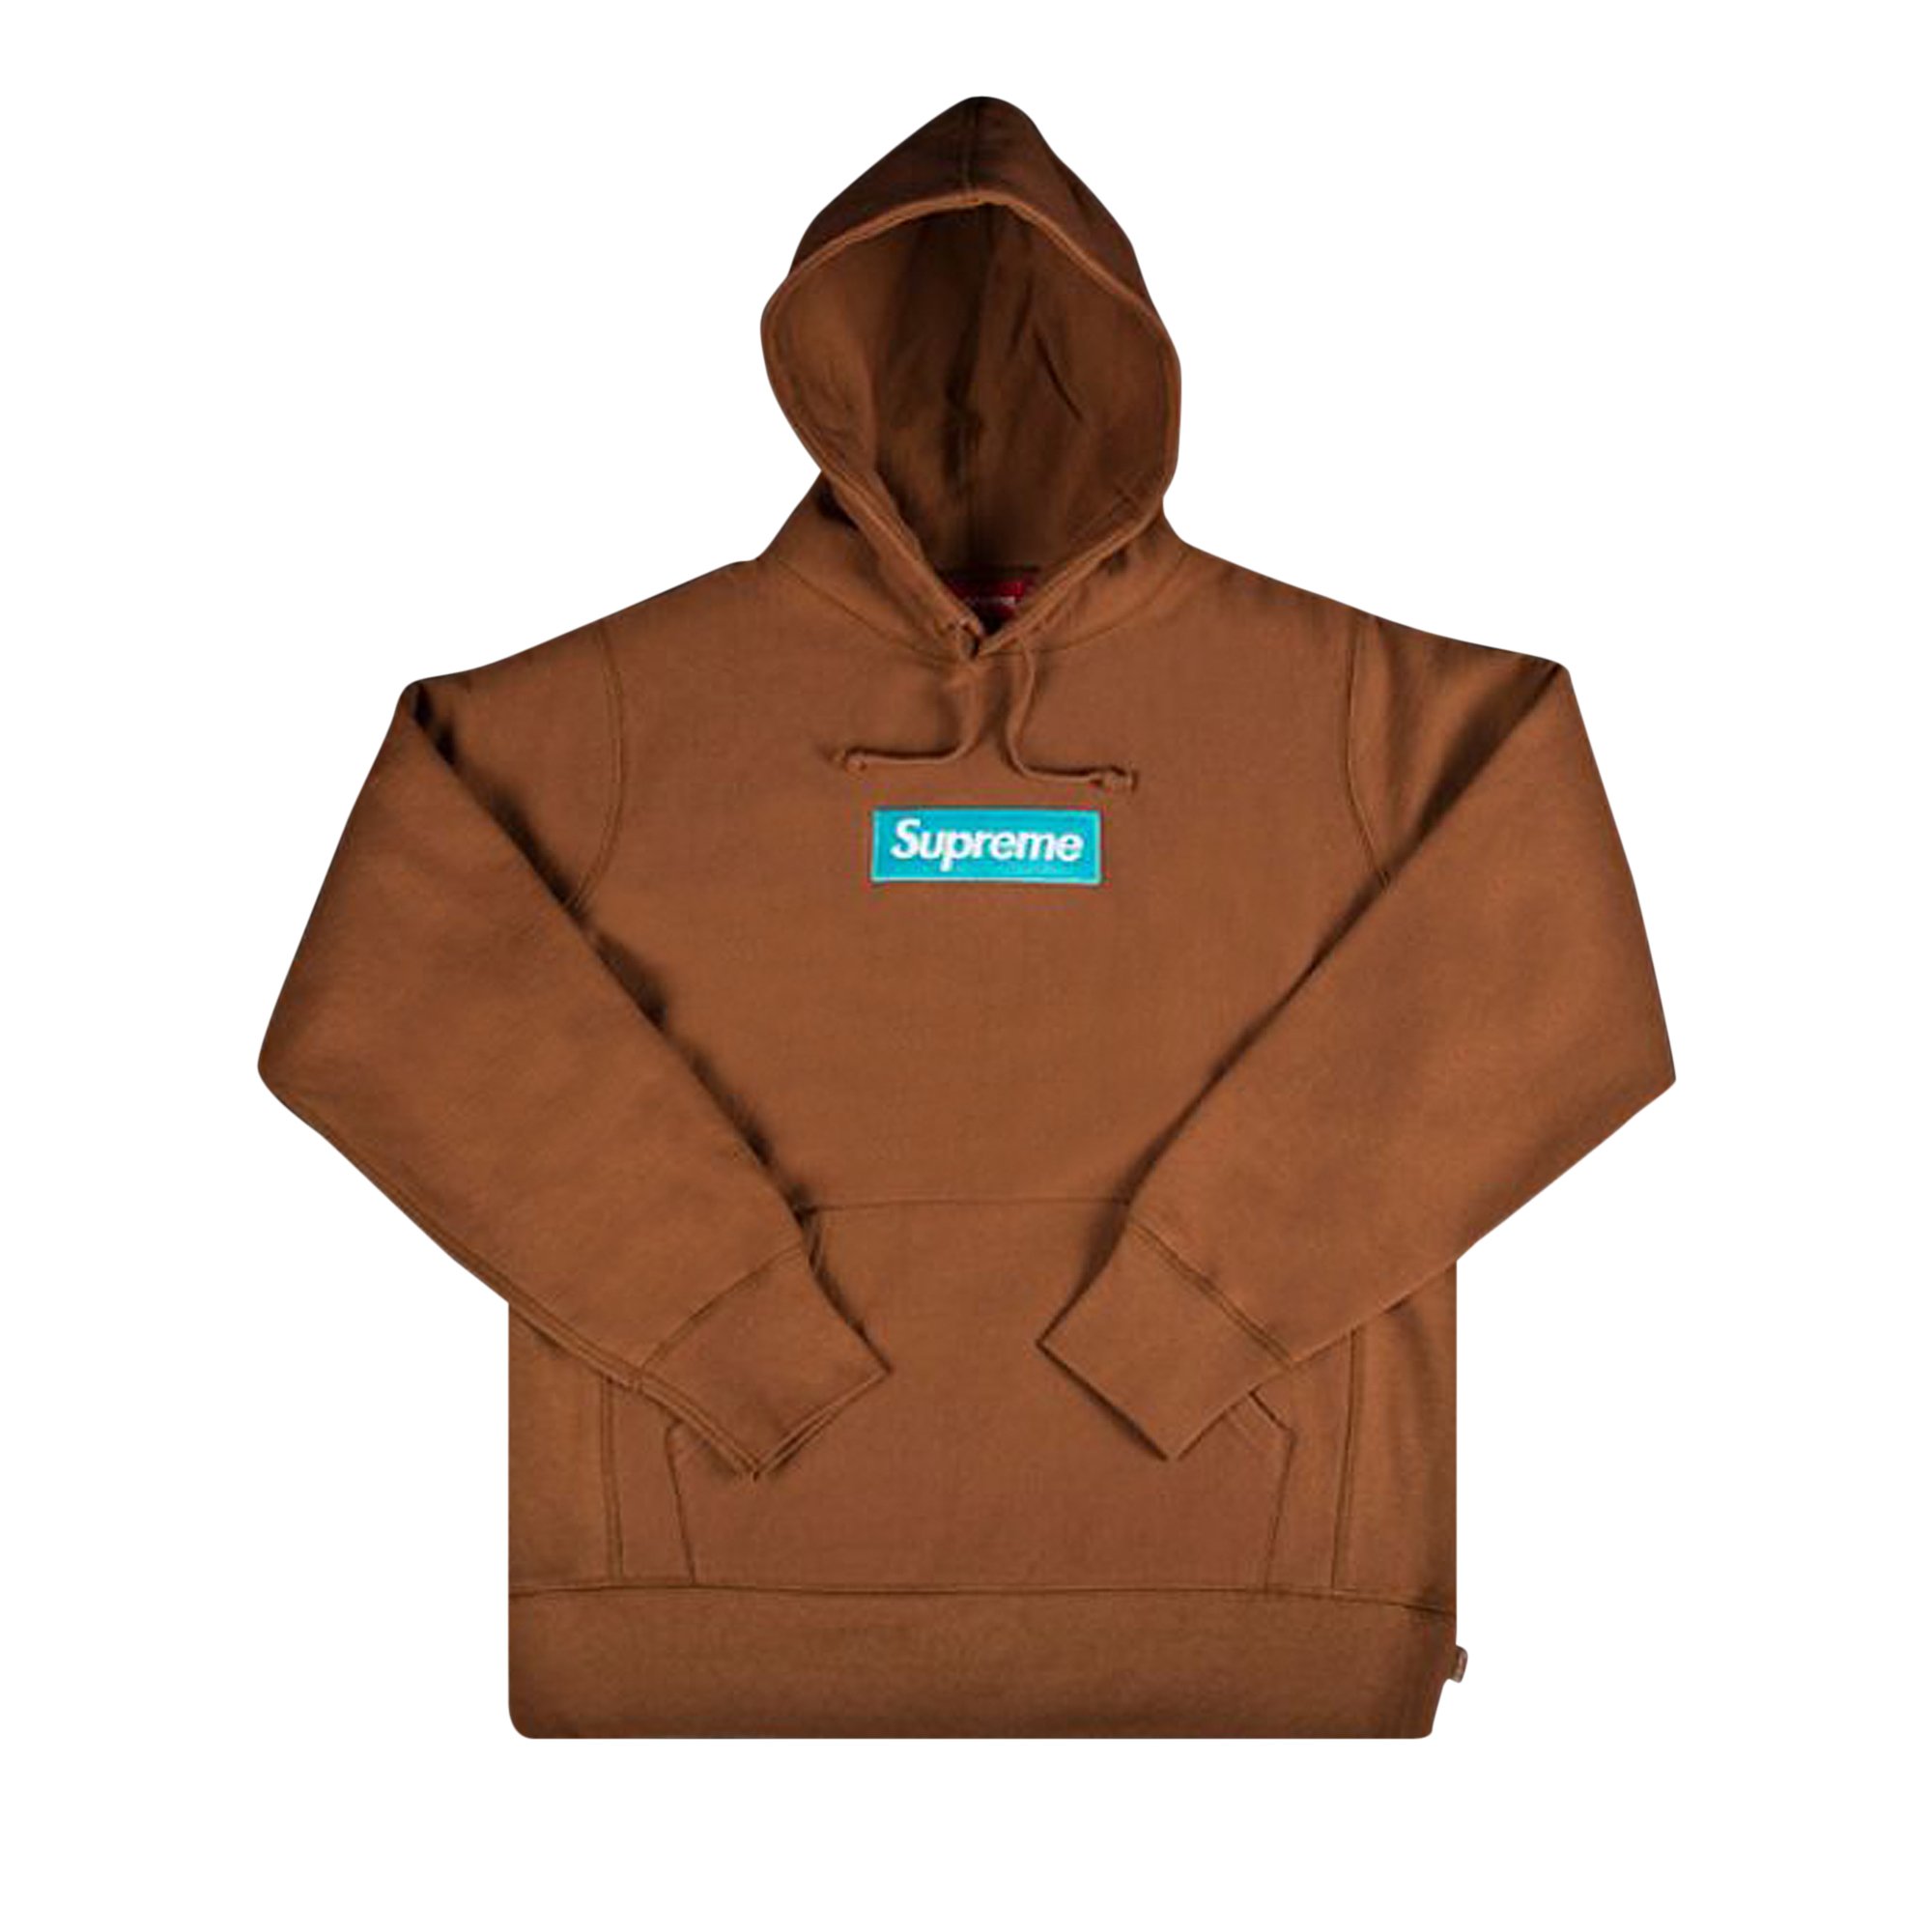 Buy Supreme Box Logo Hooded Sweatshirt 'Rust'   FWSW RUST   GOAT